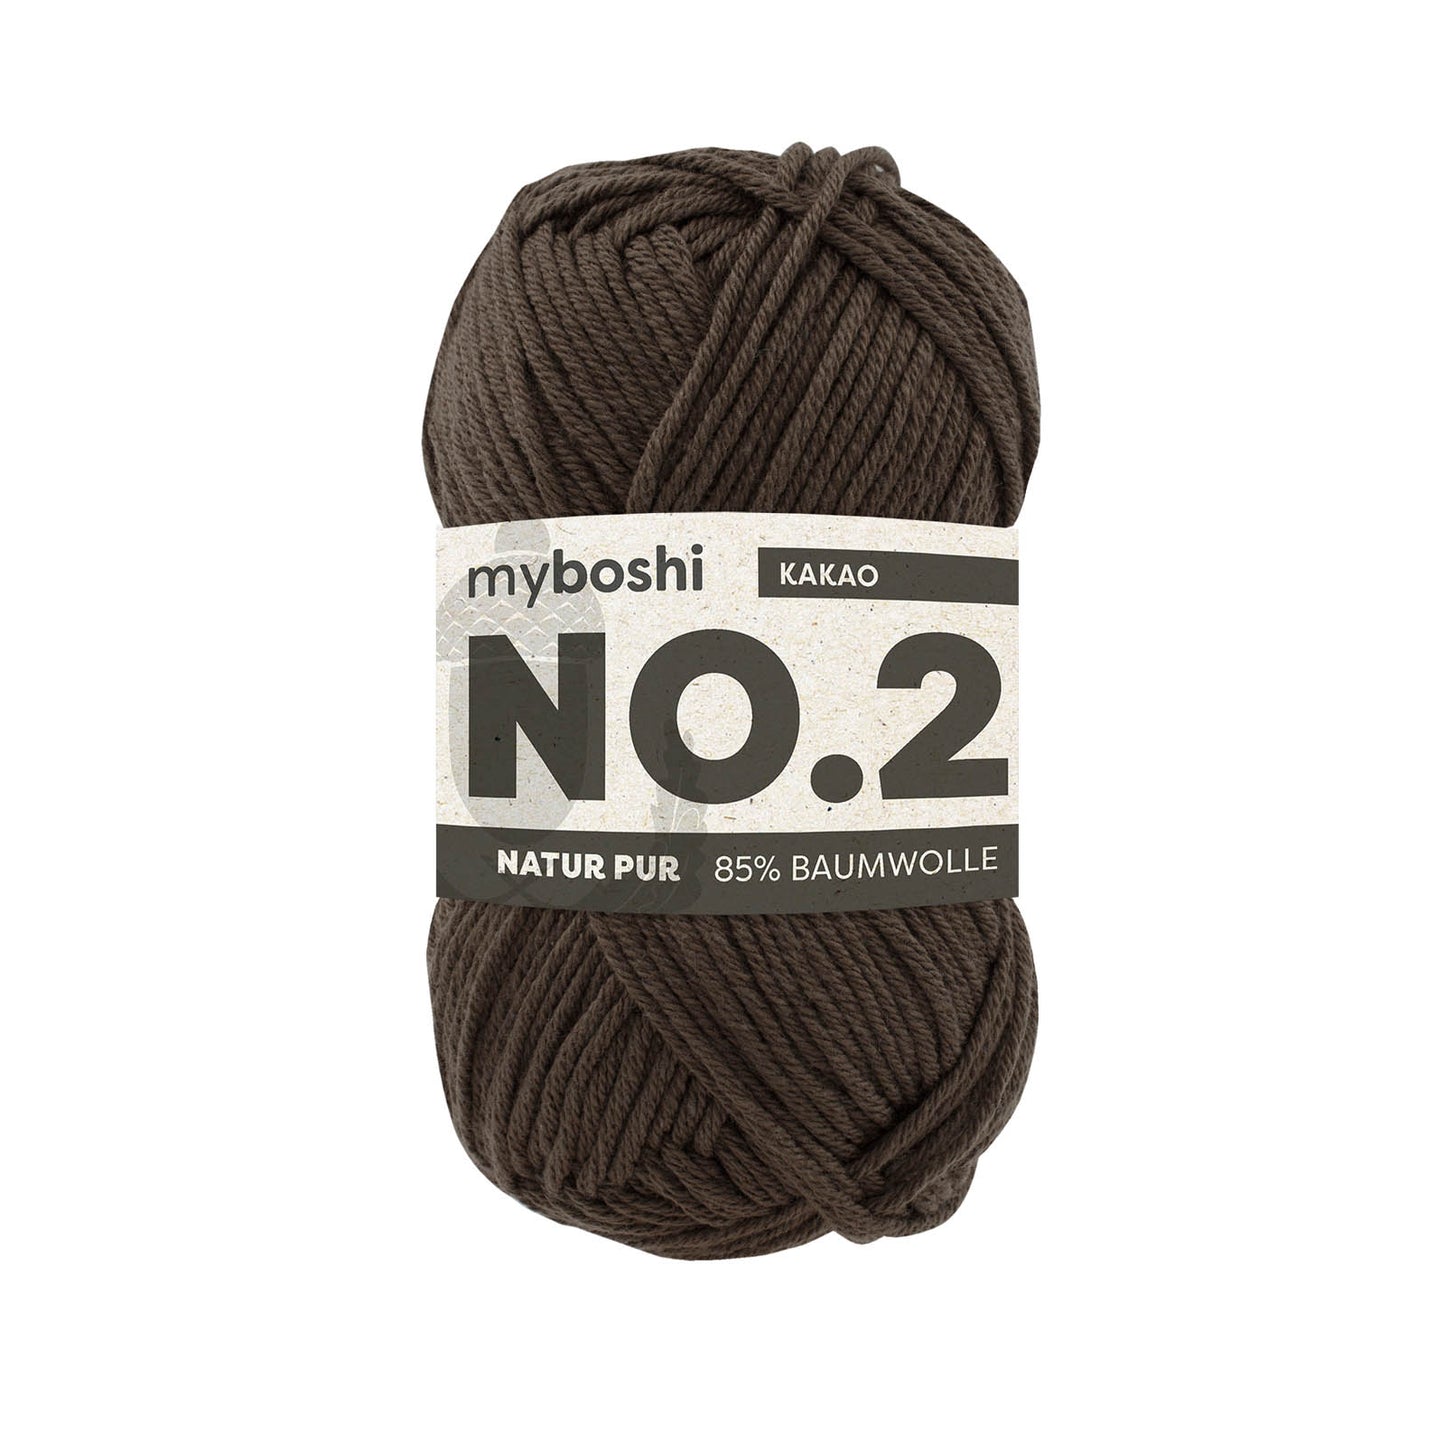 myboshi No.2, 100% vegan 2740 cocoa